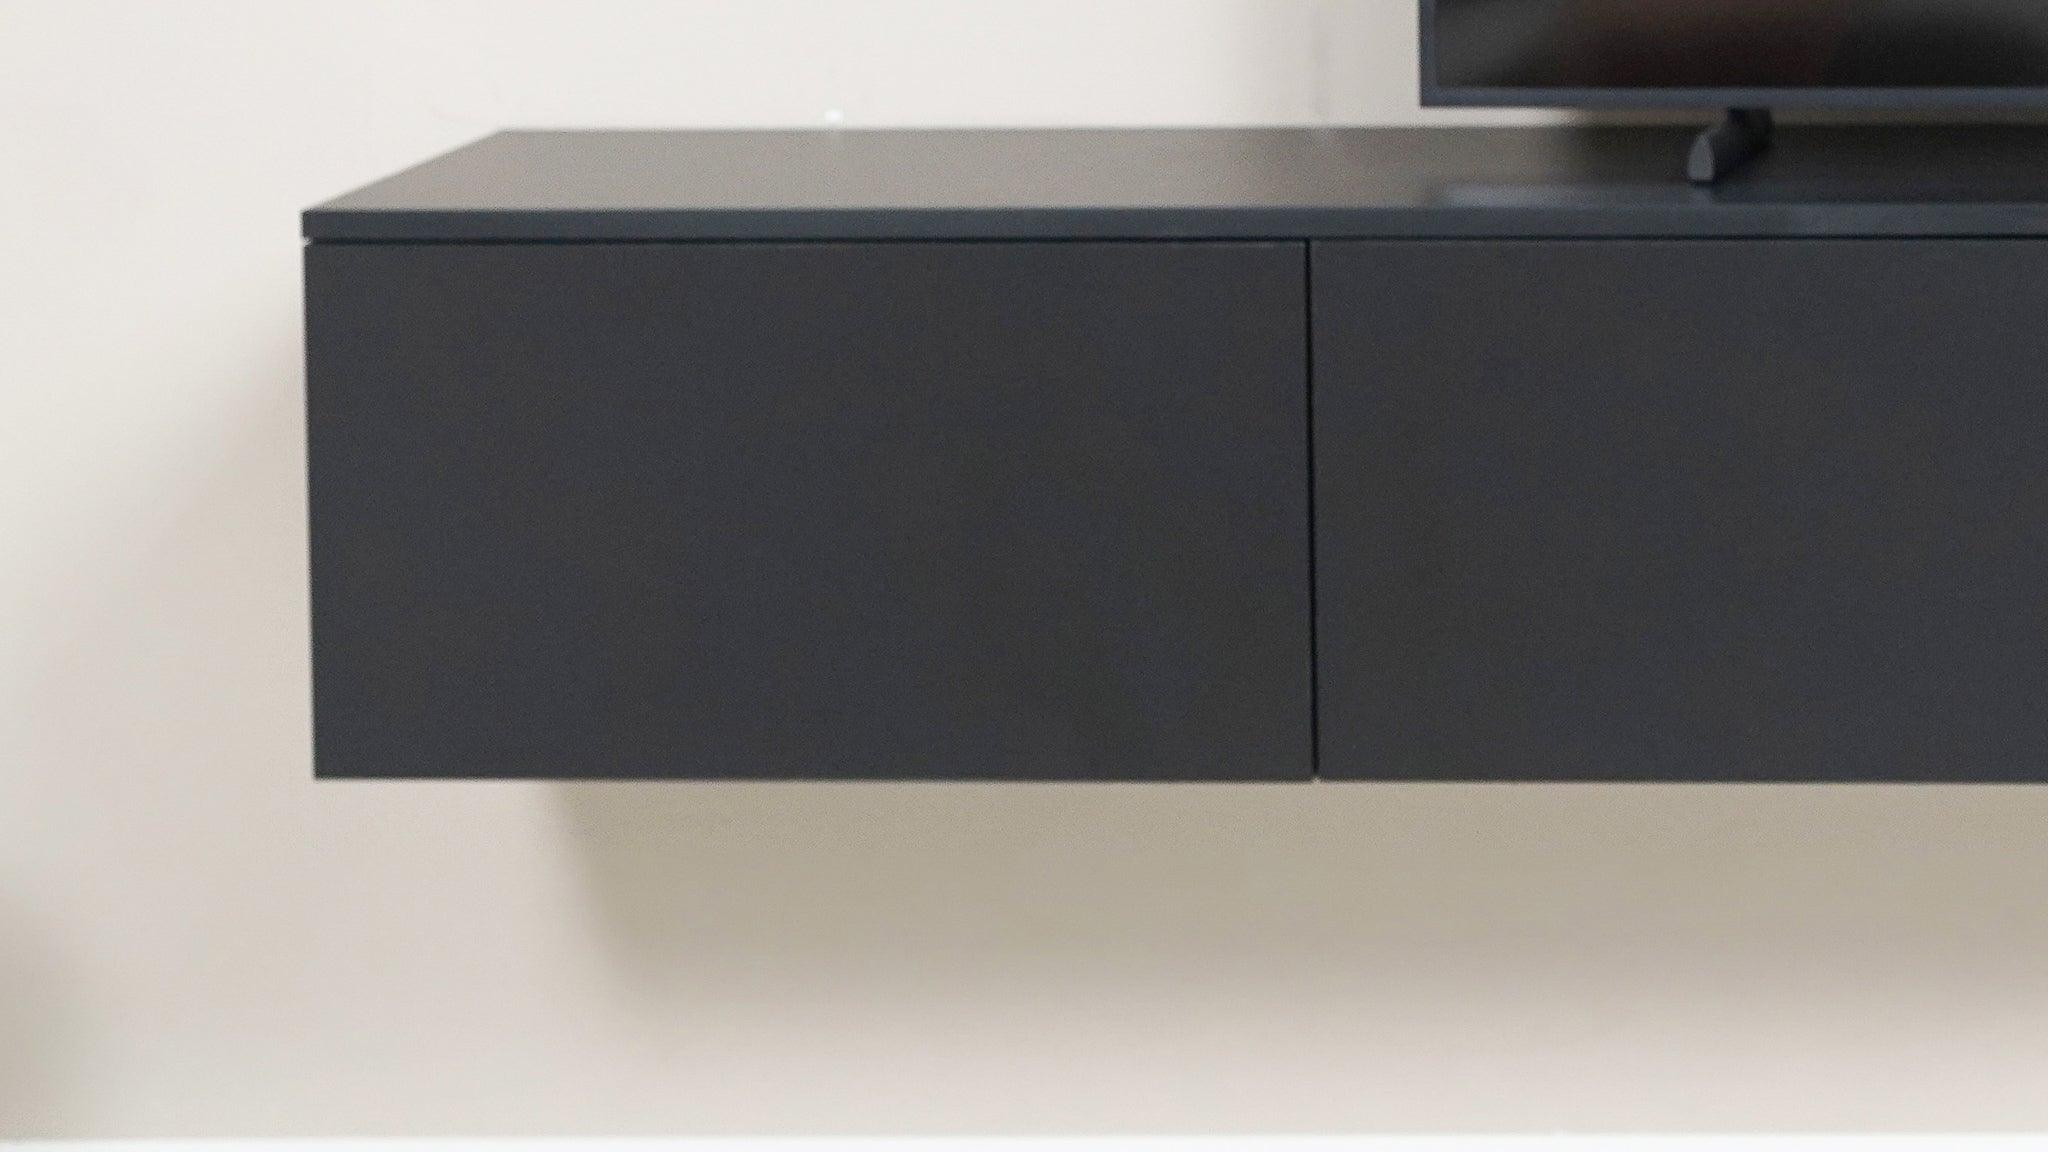 TV meubel - Zwart - 3 kleppen en open vak - {{ product.type }} - Kas20